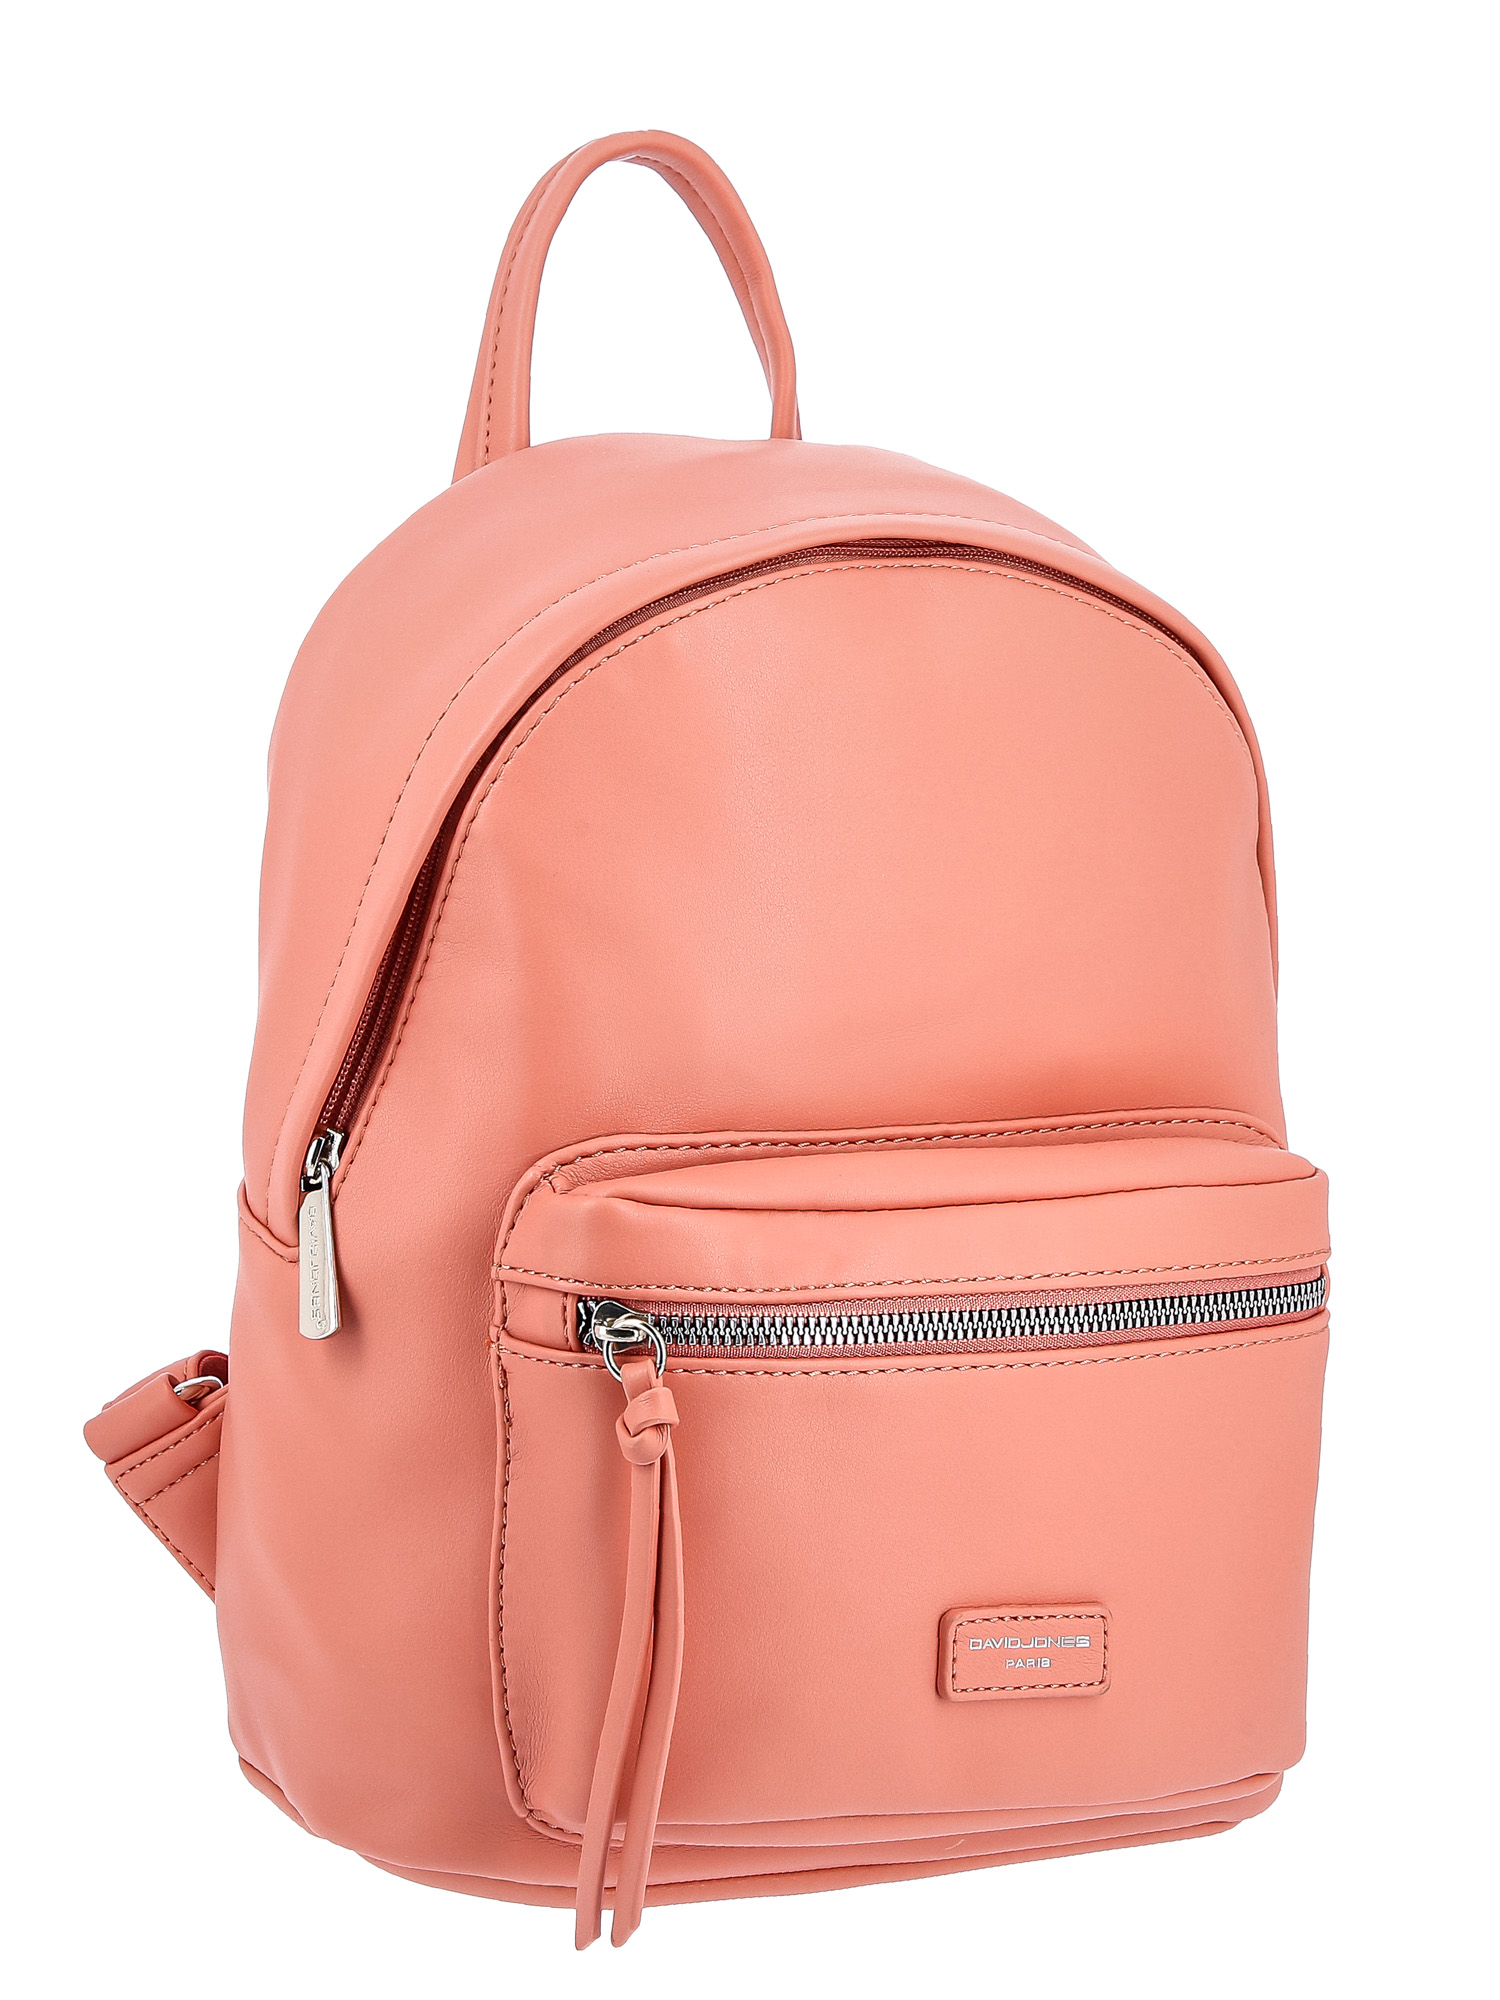 Рюкзак женский David Jones 6676CMDD розово-оранжевый, 29х28х12 см